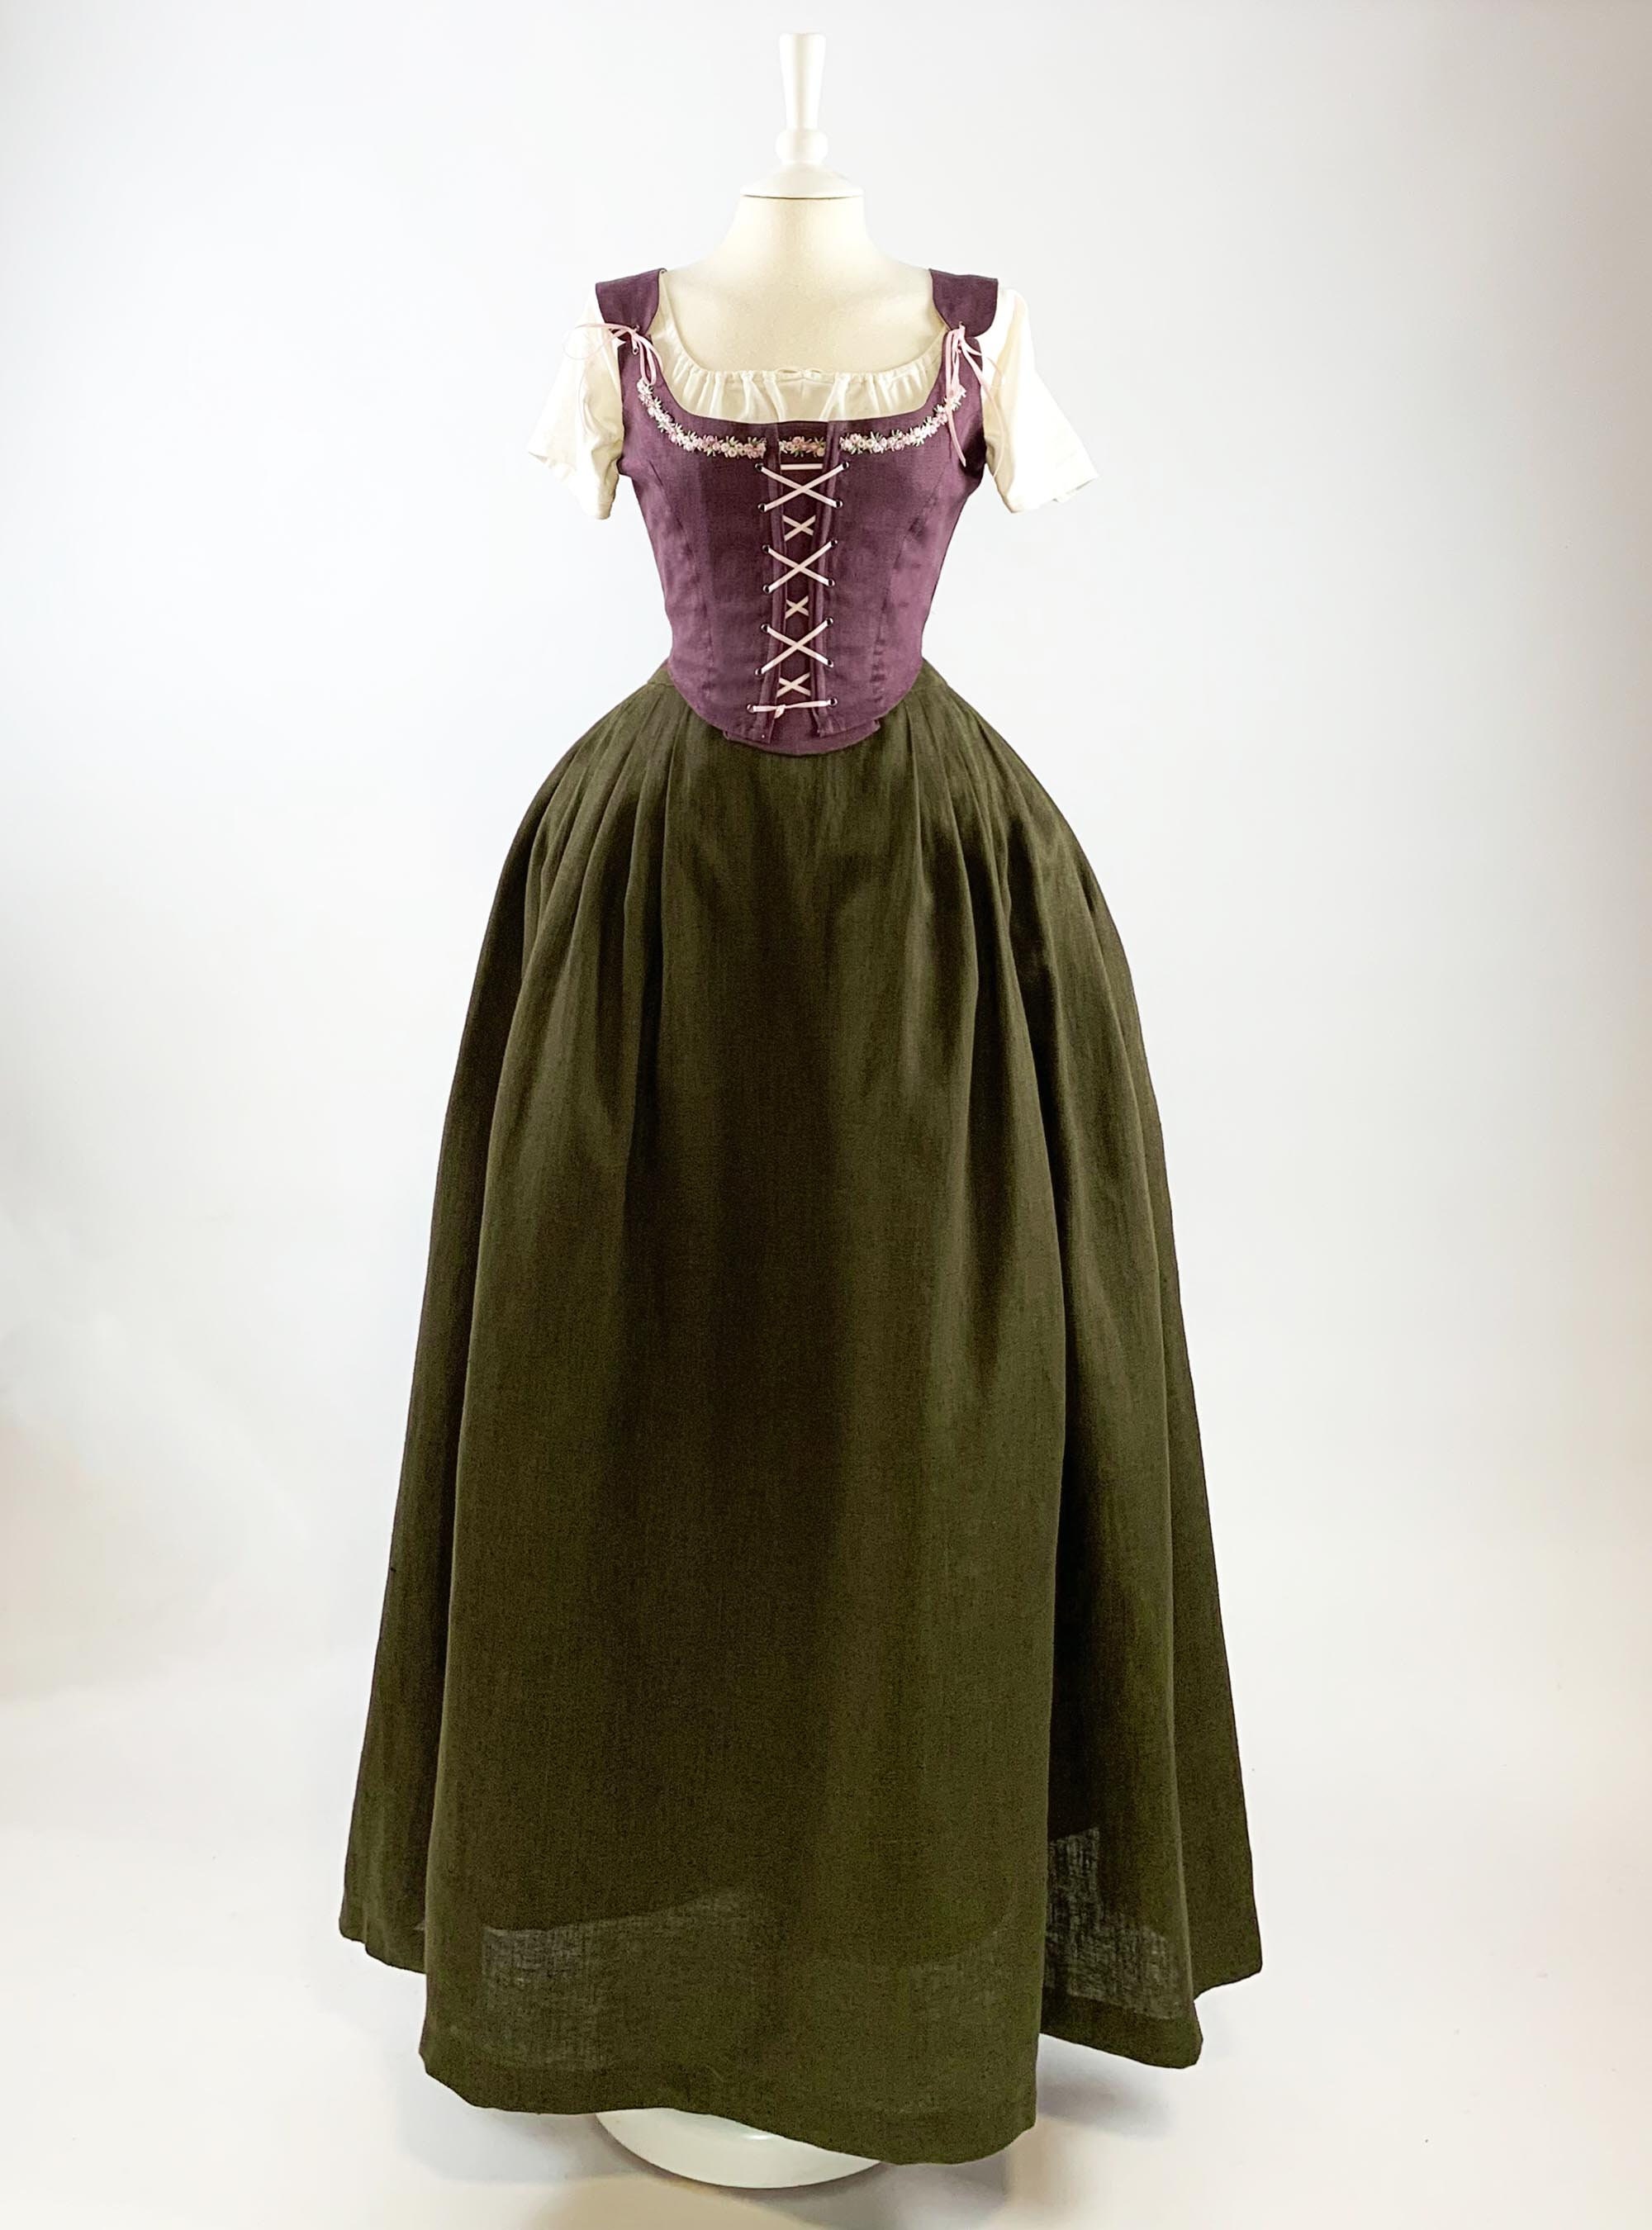 Renaissance dress in dark purple & moss green linen, renaissance fair